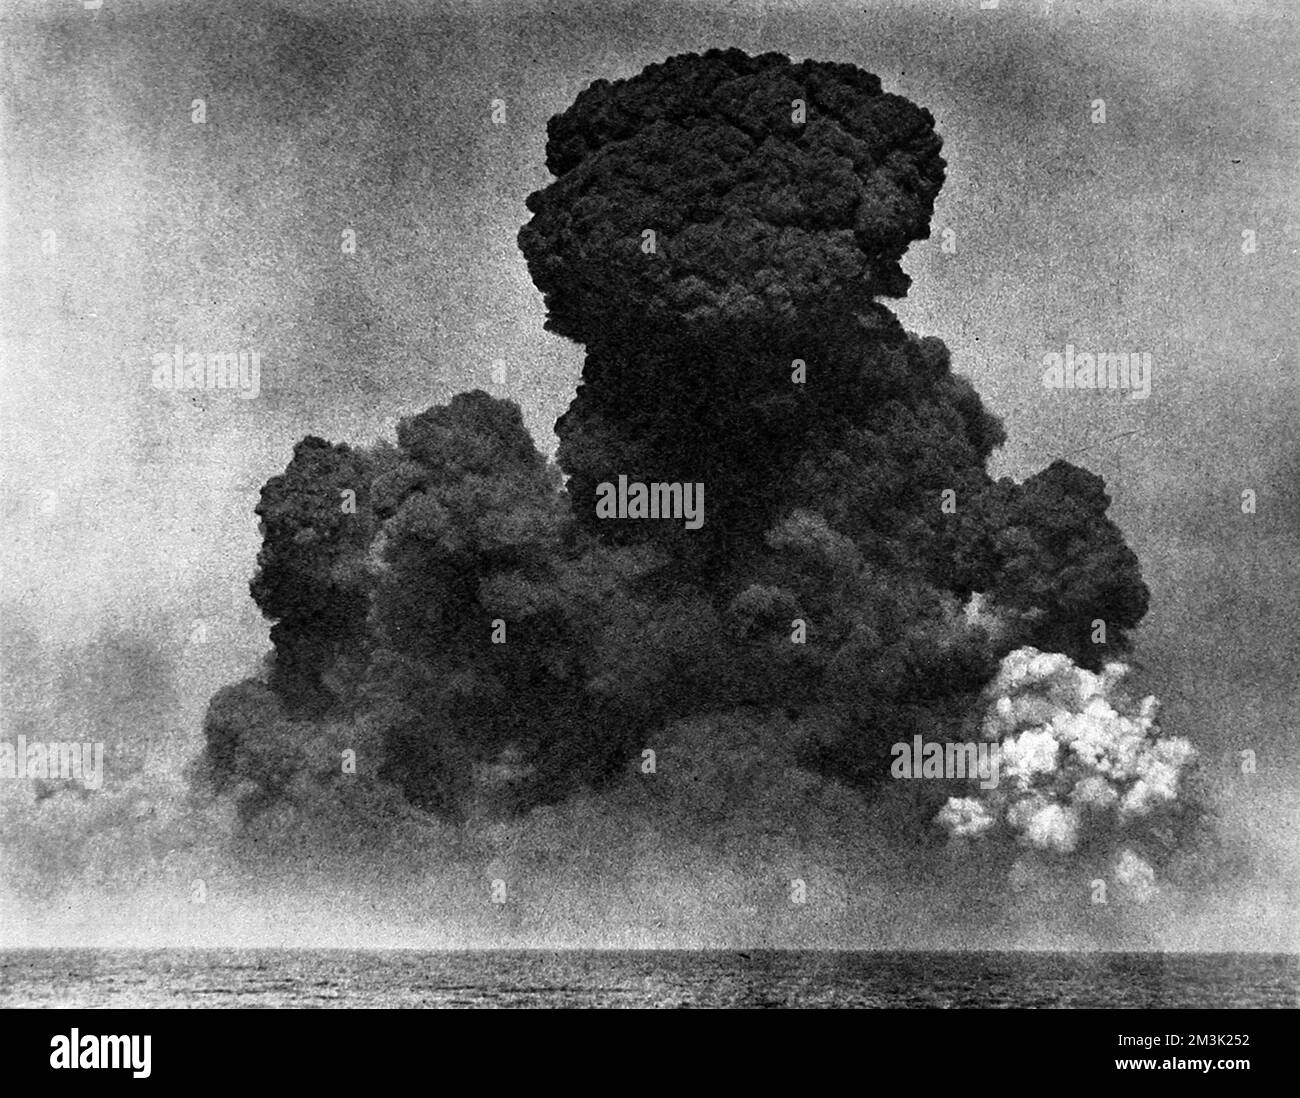 Photographie montrant la destruction de l'ancienne base navale d'Heligoland, en Allemagne, le 18th avril 1947. Heligoland avait été un bastion pour les forces militaires allemandes pendant les deux guerres mondiales et a été détruit par les forces armées britanniques, en utilisant 6700 tonnes de haut explosif, dans le cadre de la reconstruction d'après-guerre de l'Allemagne. Le grand nuage de fumée montré dans cette photo était rouge avec du grès désintégré et s'est levé à une hauteur estimée de 10 000 pieds. Date: 1947 Banque D'Images